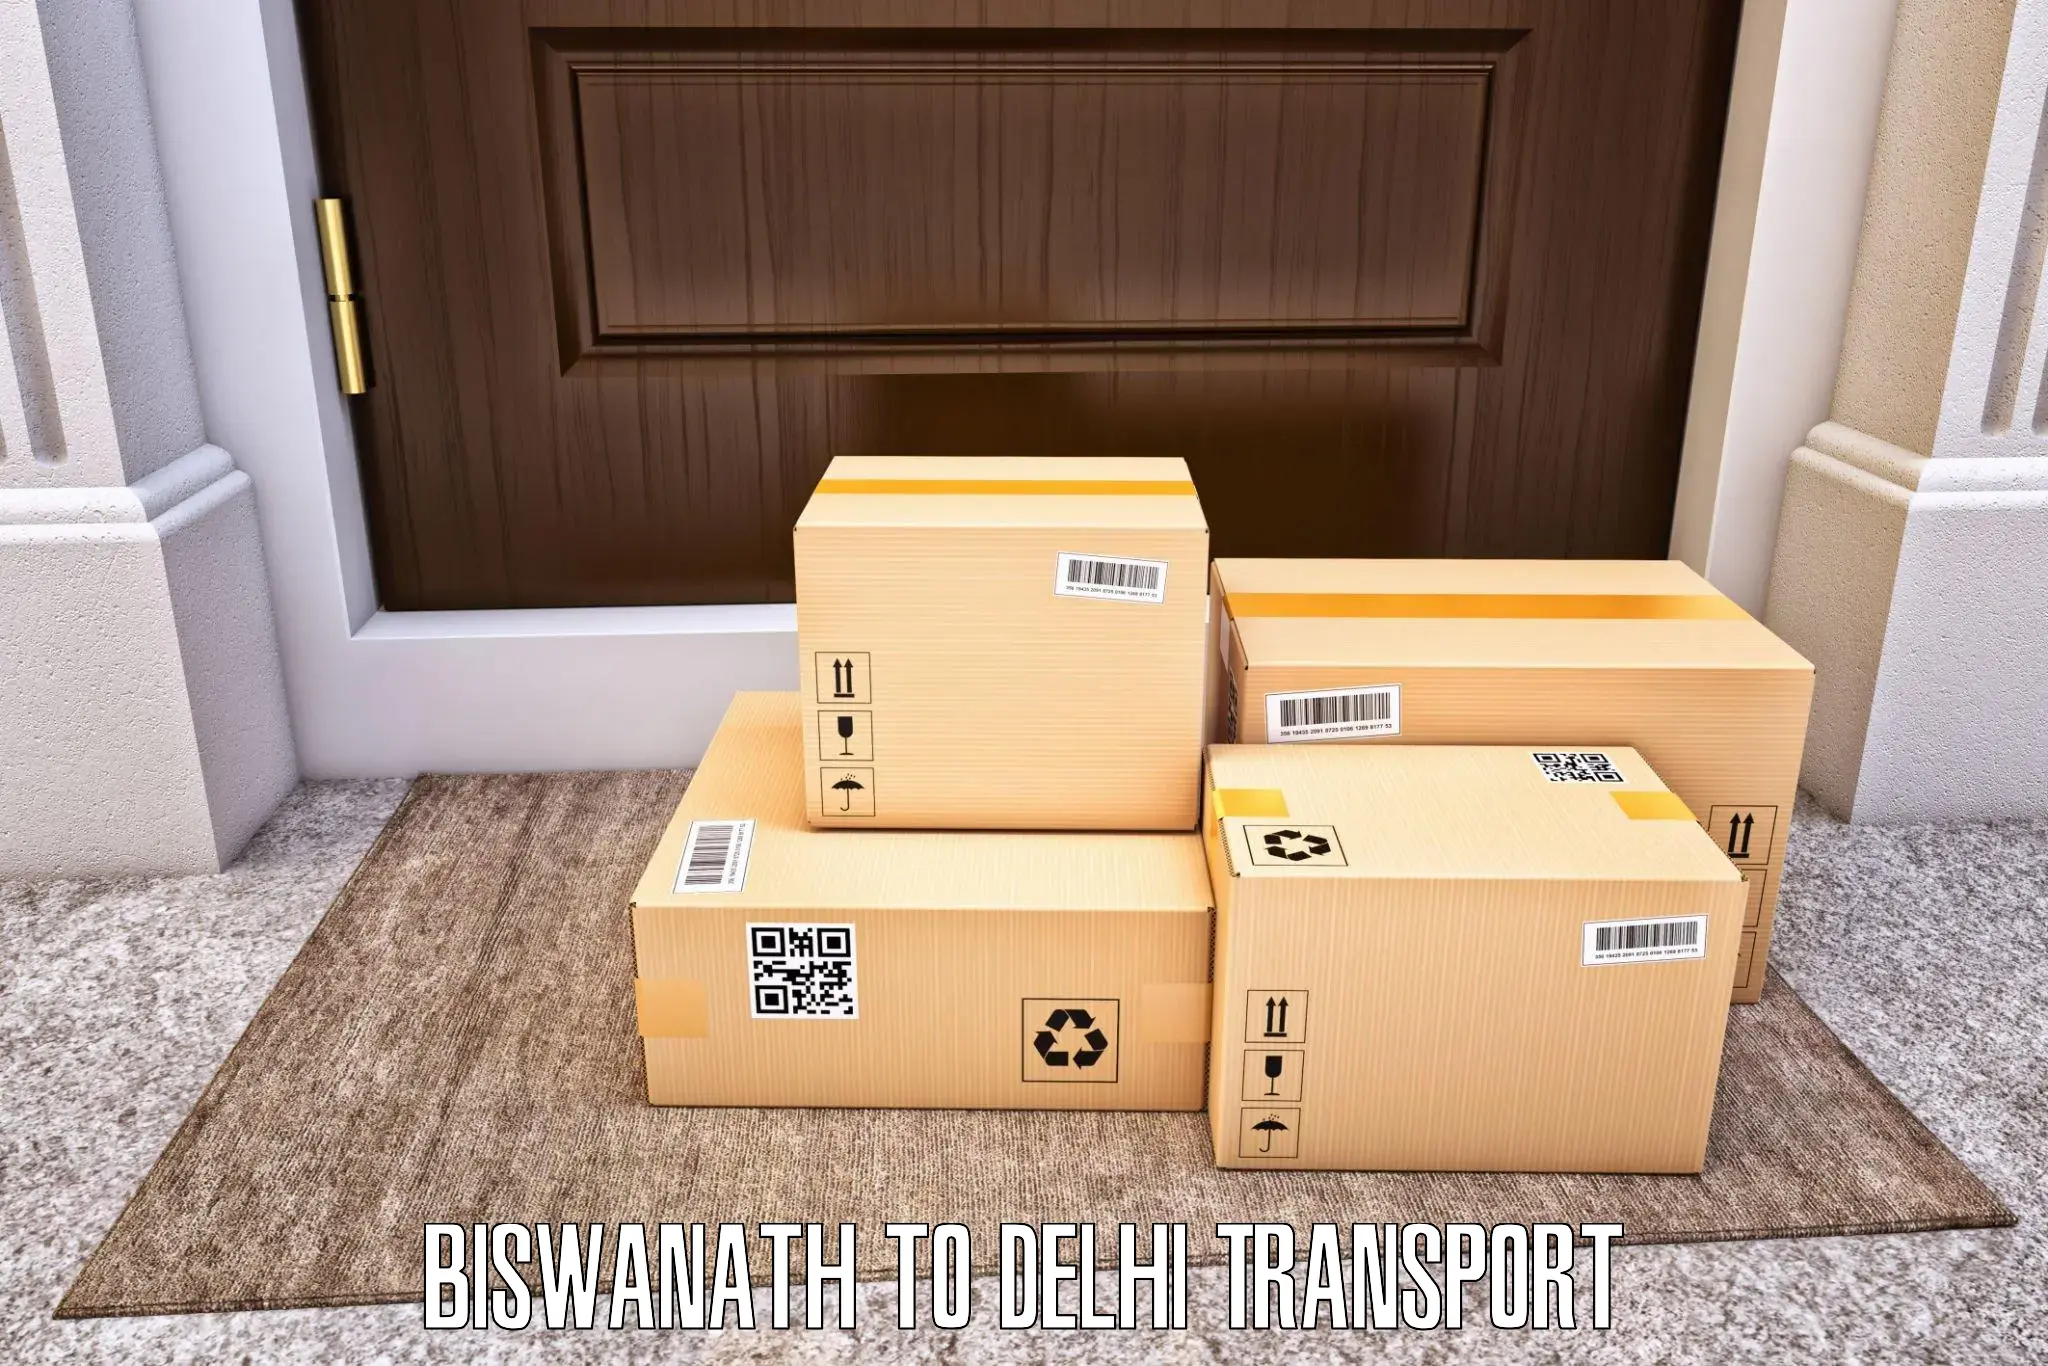 Interstate transport services Biswanath to Delhi